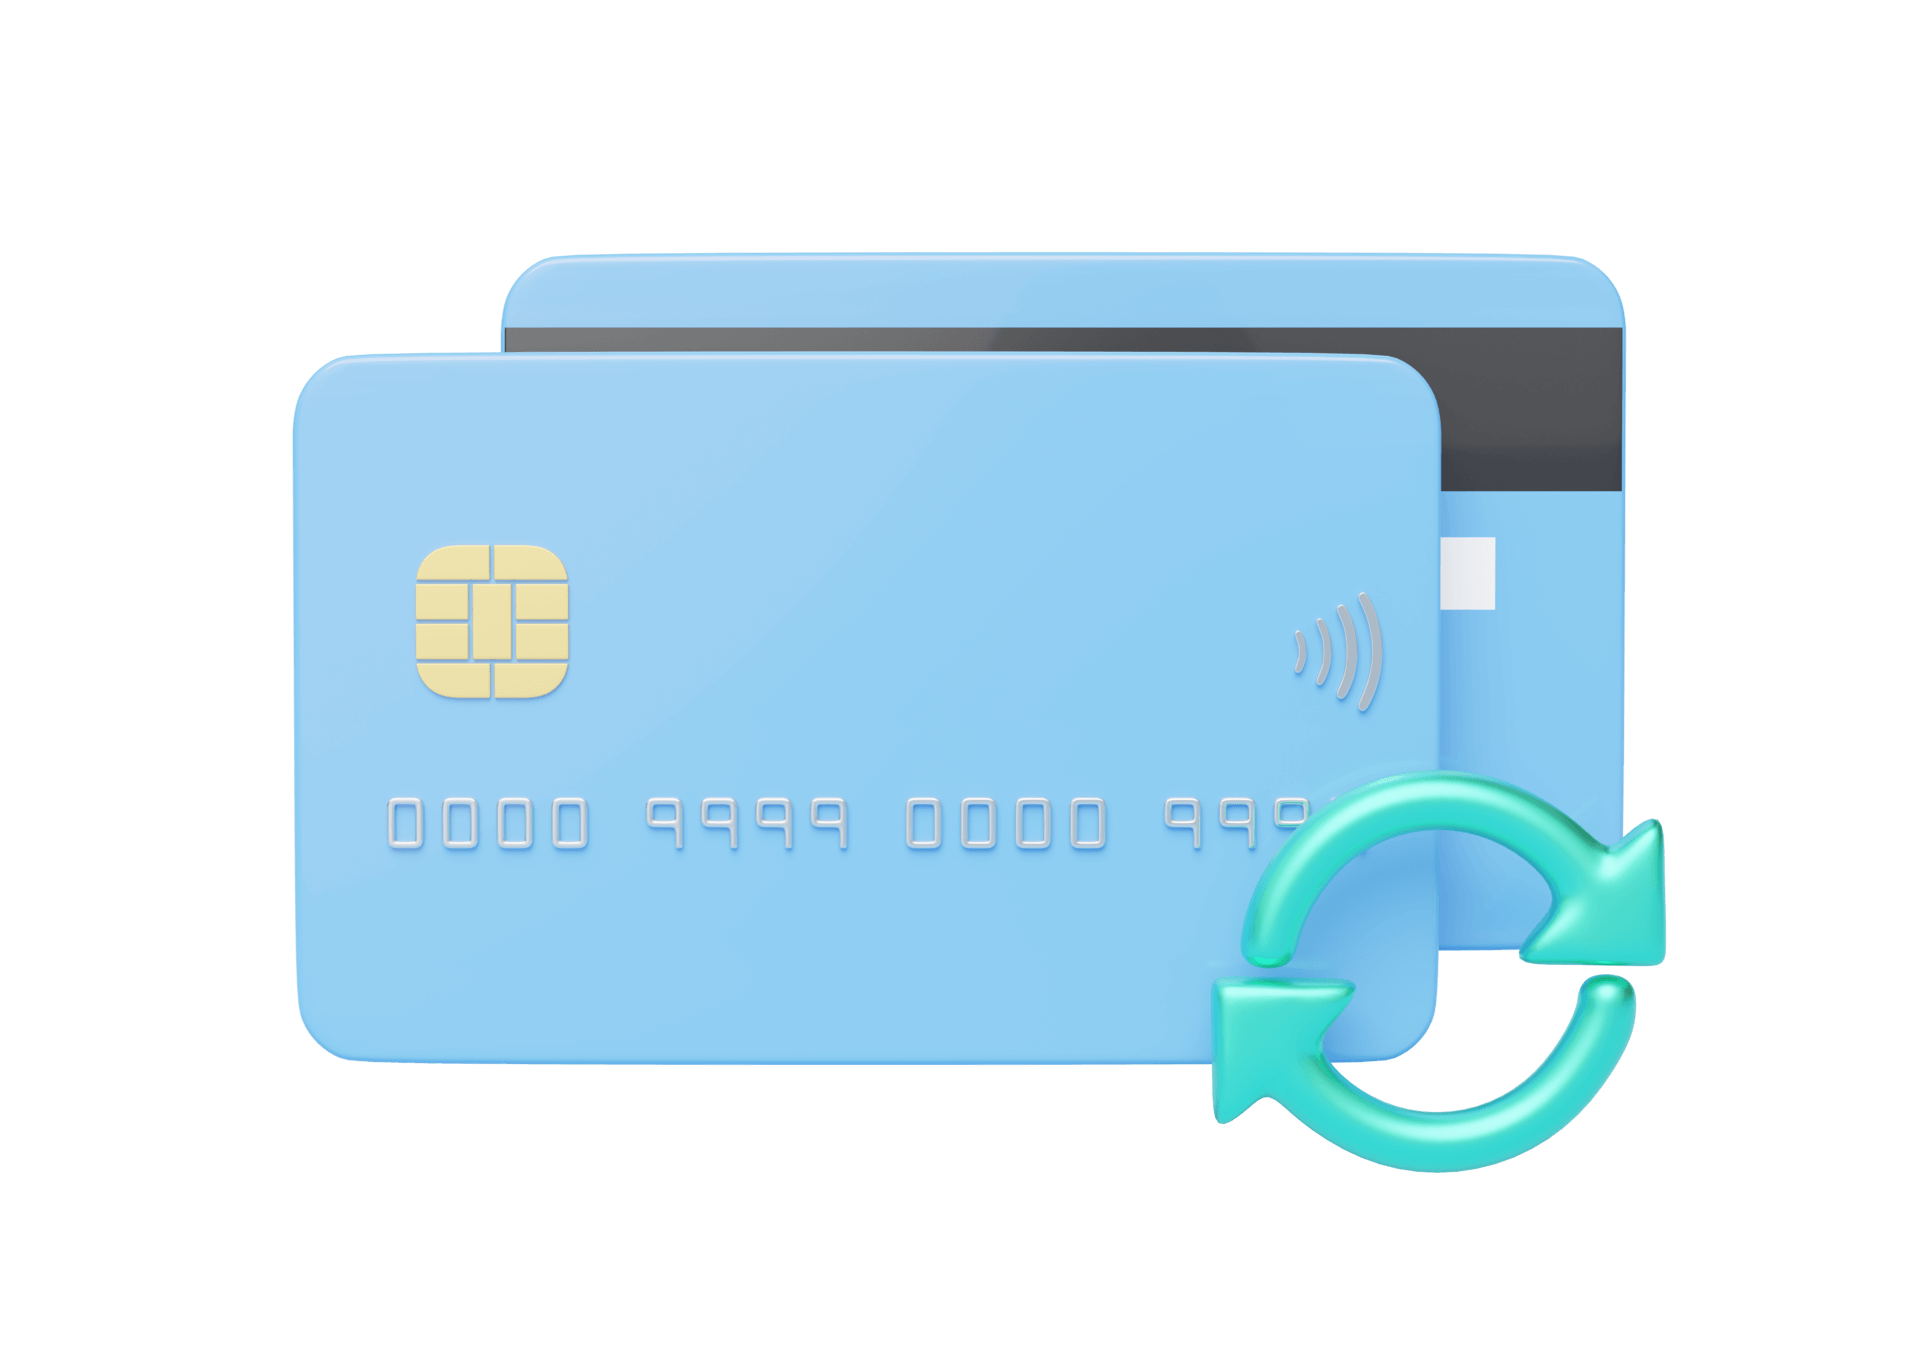 credit card updater service